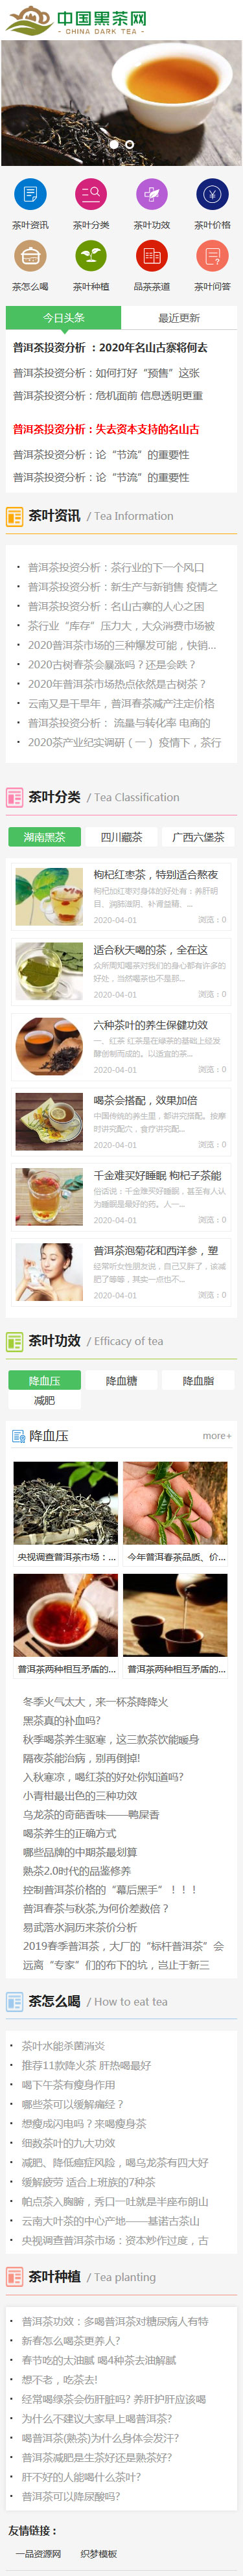 织梦绿色风格响应式茶叶新闻资讯类网站模板